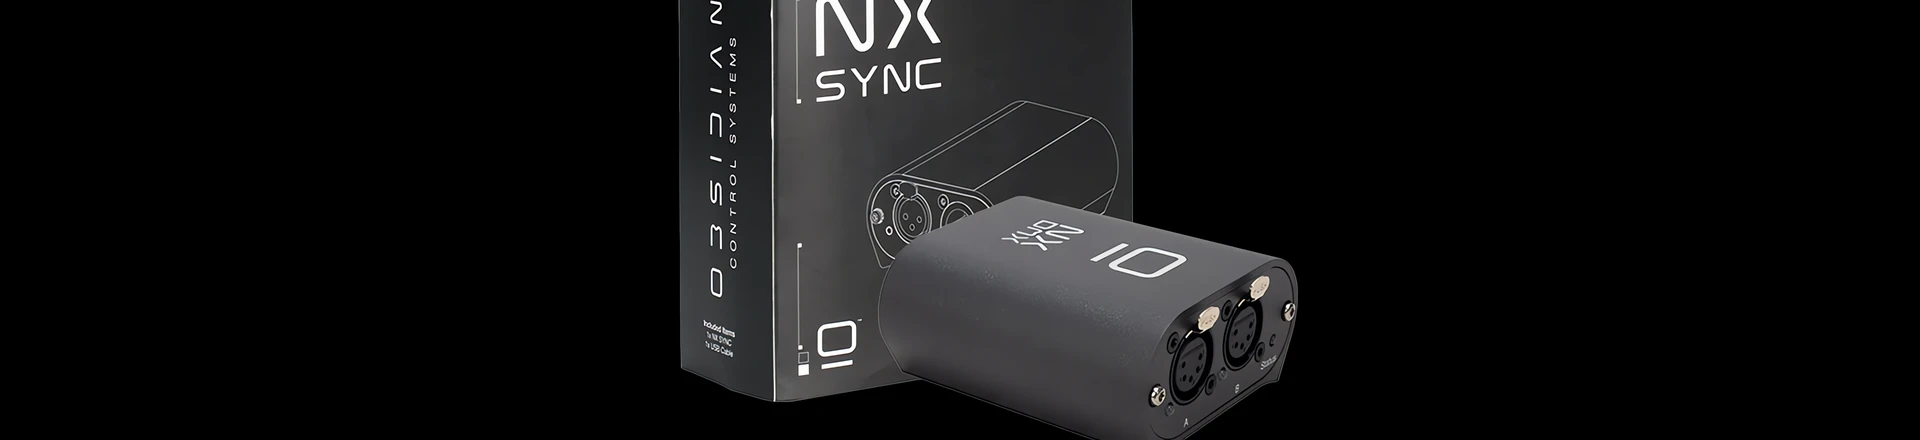 Jak zmienić timecode SMPTE na MIDI? Obsidian Control Systems NX SYNC